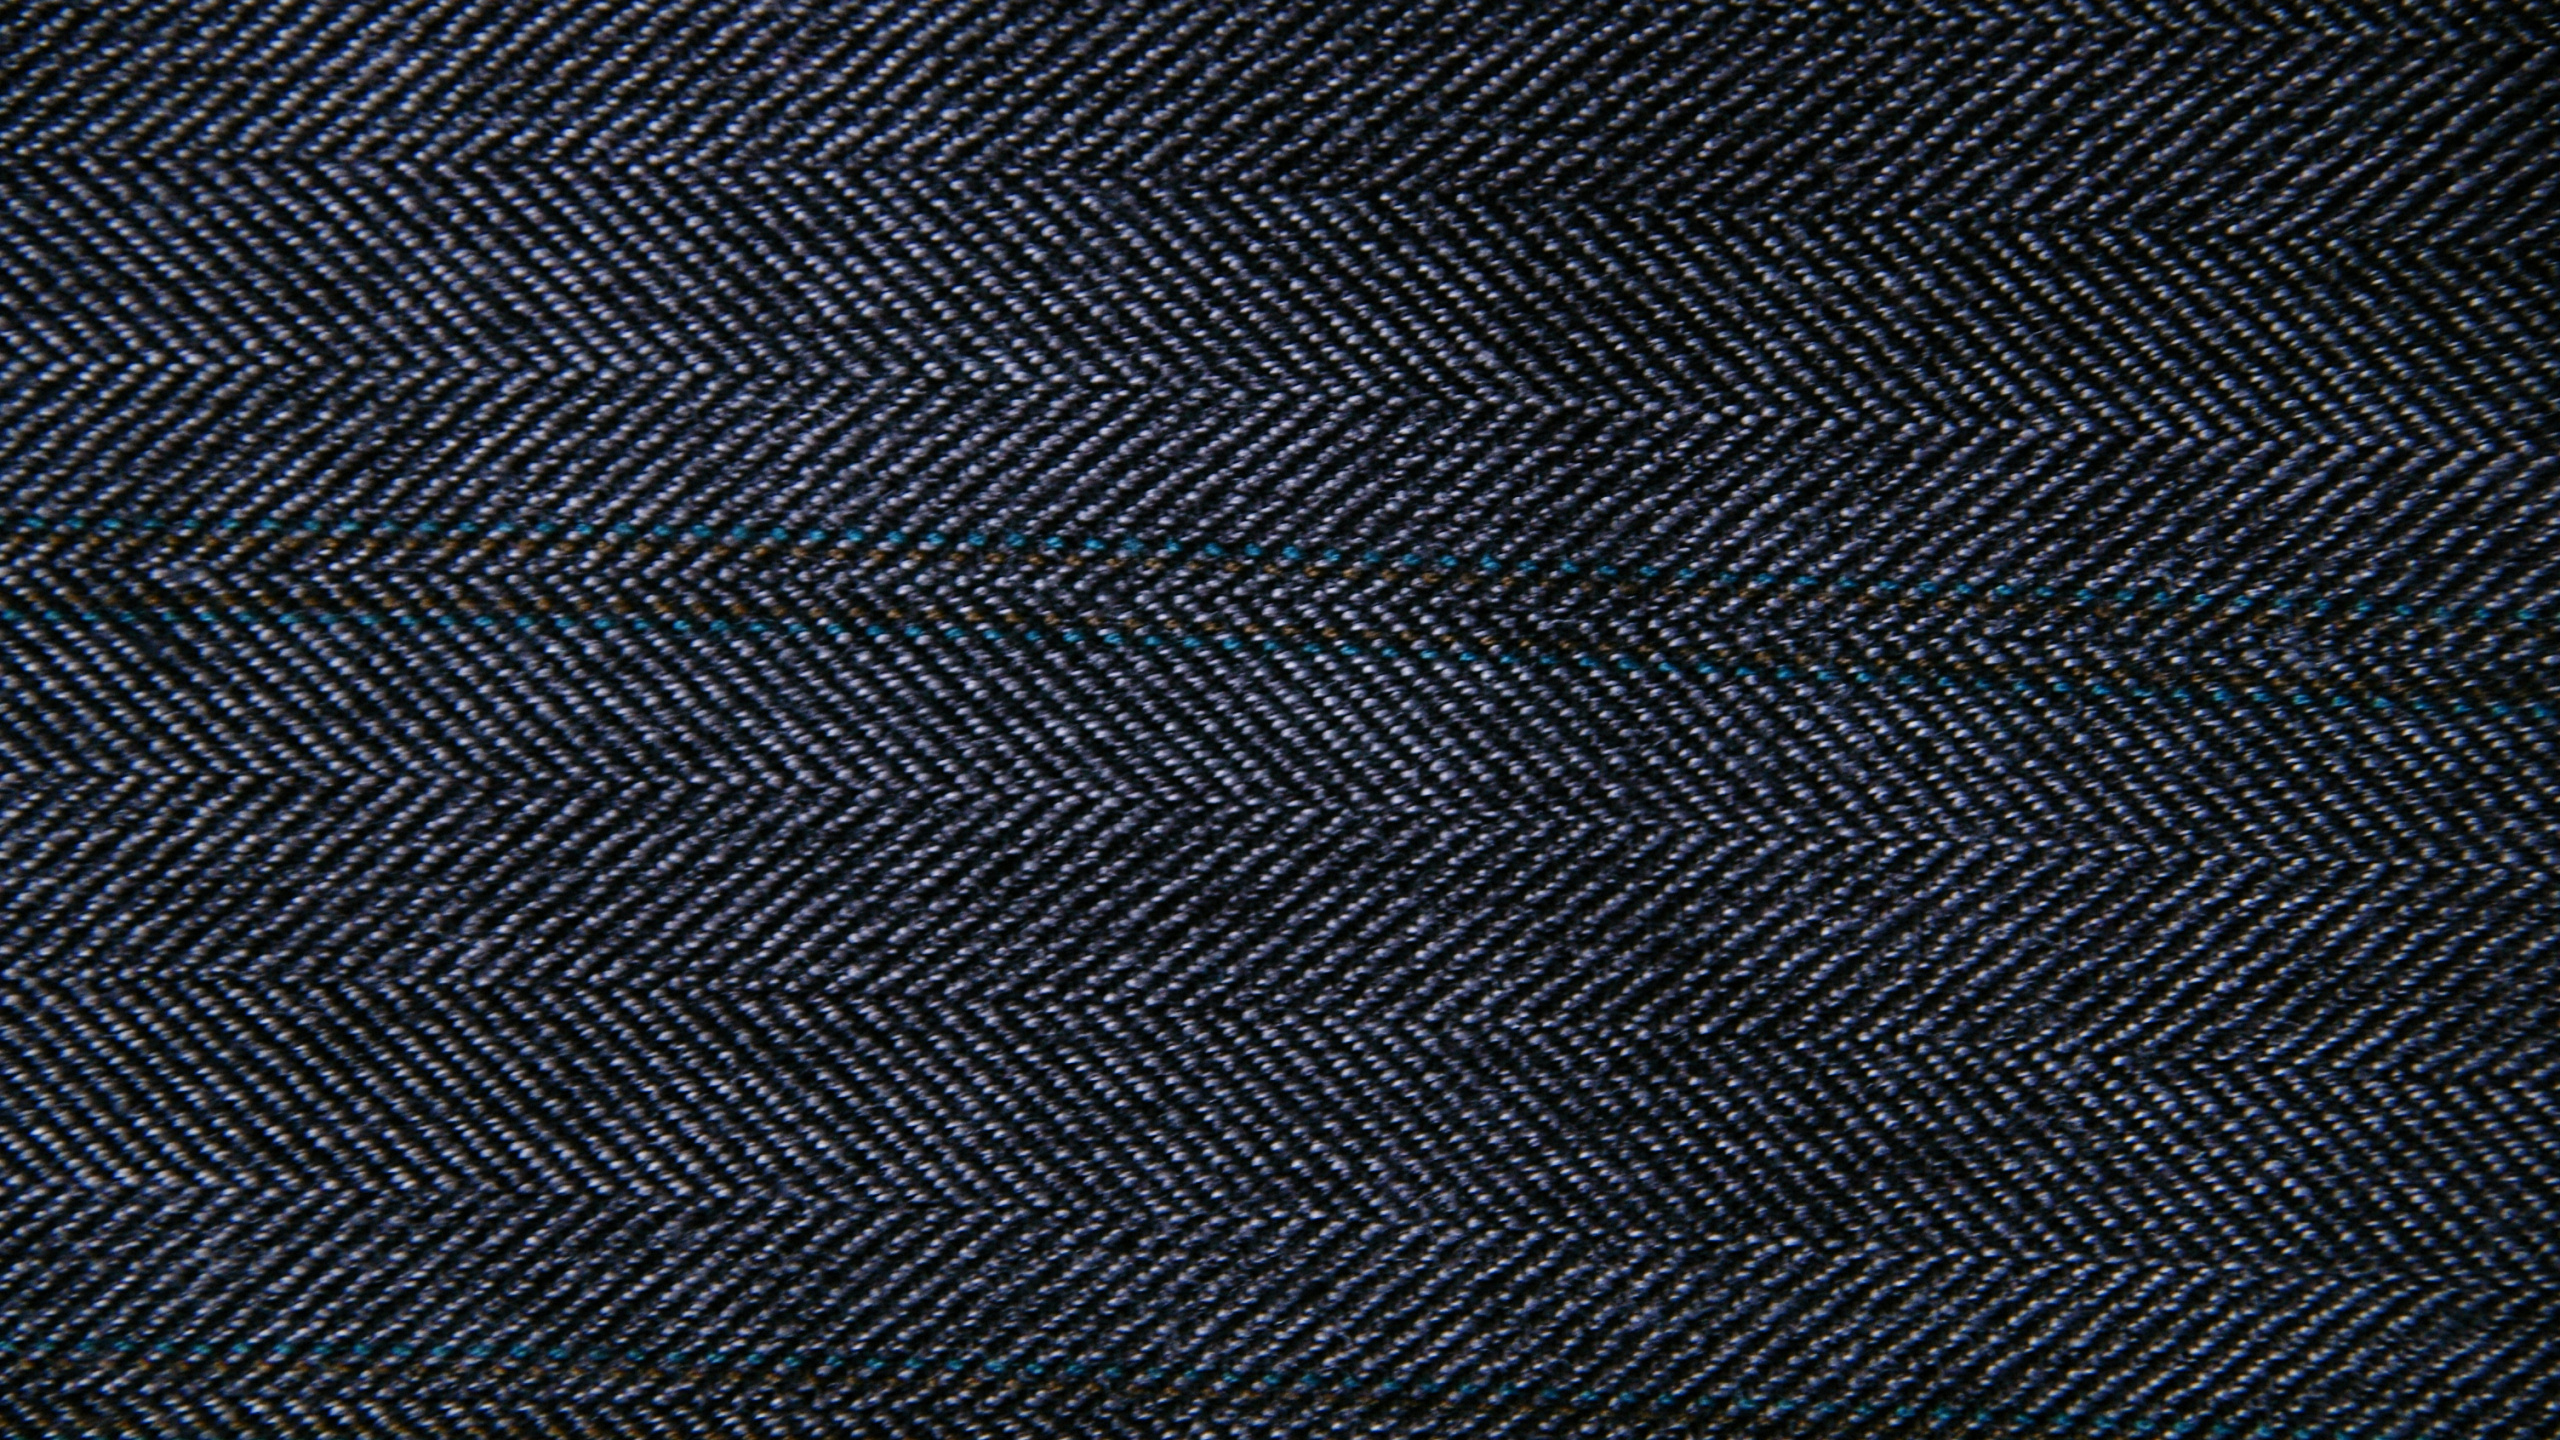 Textil Rayado Blanco y Negro. Wallpaper in 2560x1440 Resolution